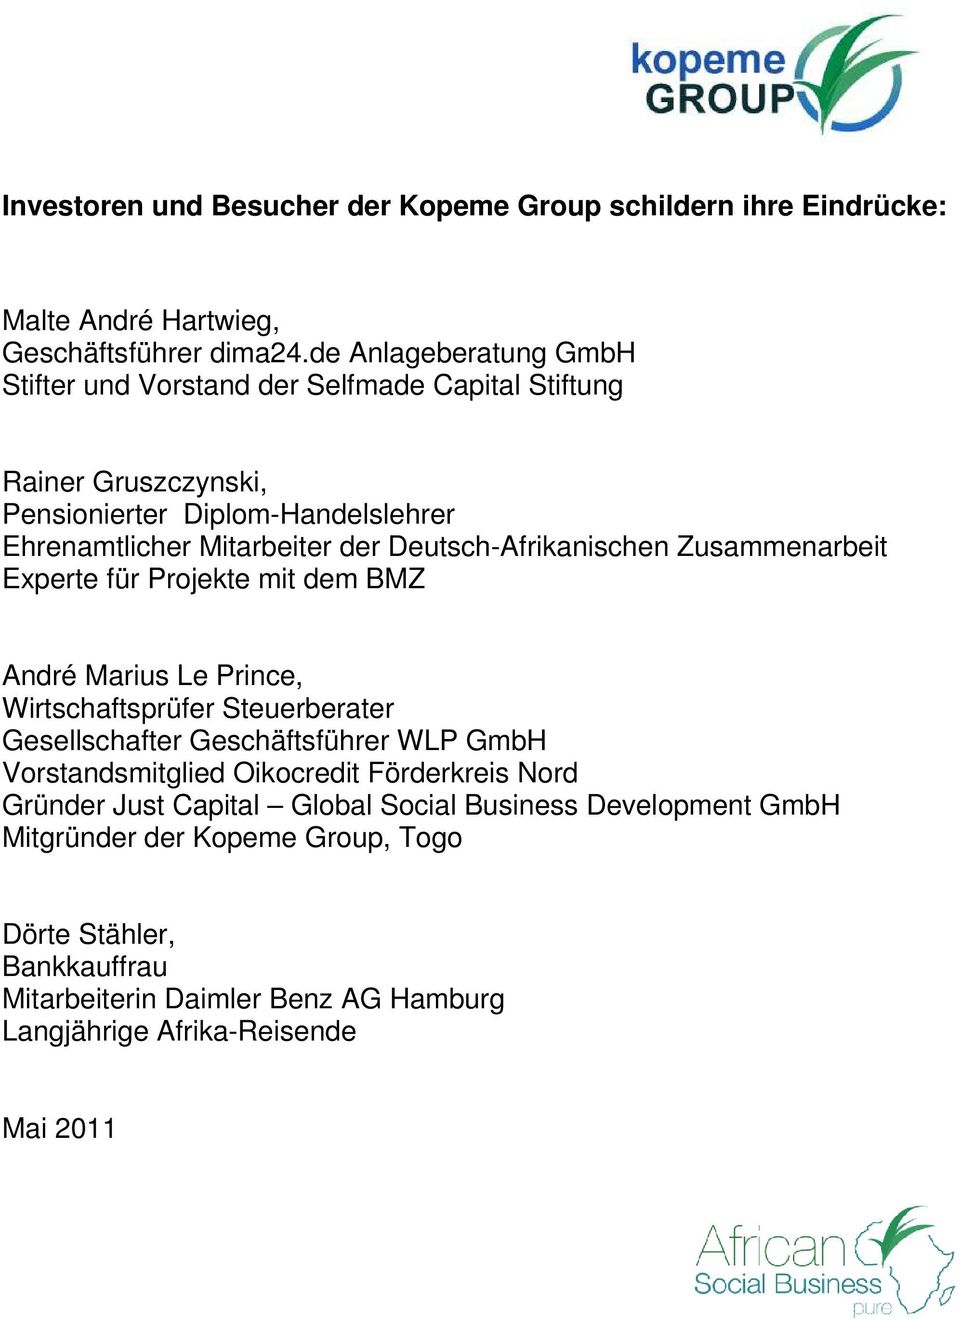 Deutsch-Afrikanischen Zusammenarbeit Experte für Prjekte mit dem BMZ André Marius Le Prince, Wirtschaftsprüfer Steuerberater Gesellschafter Geschäftsführer WLP GmbH